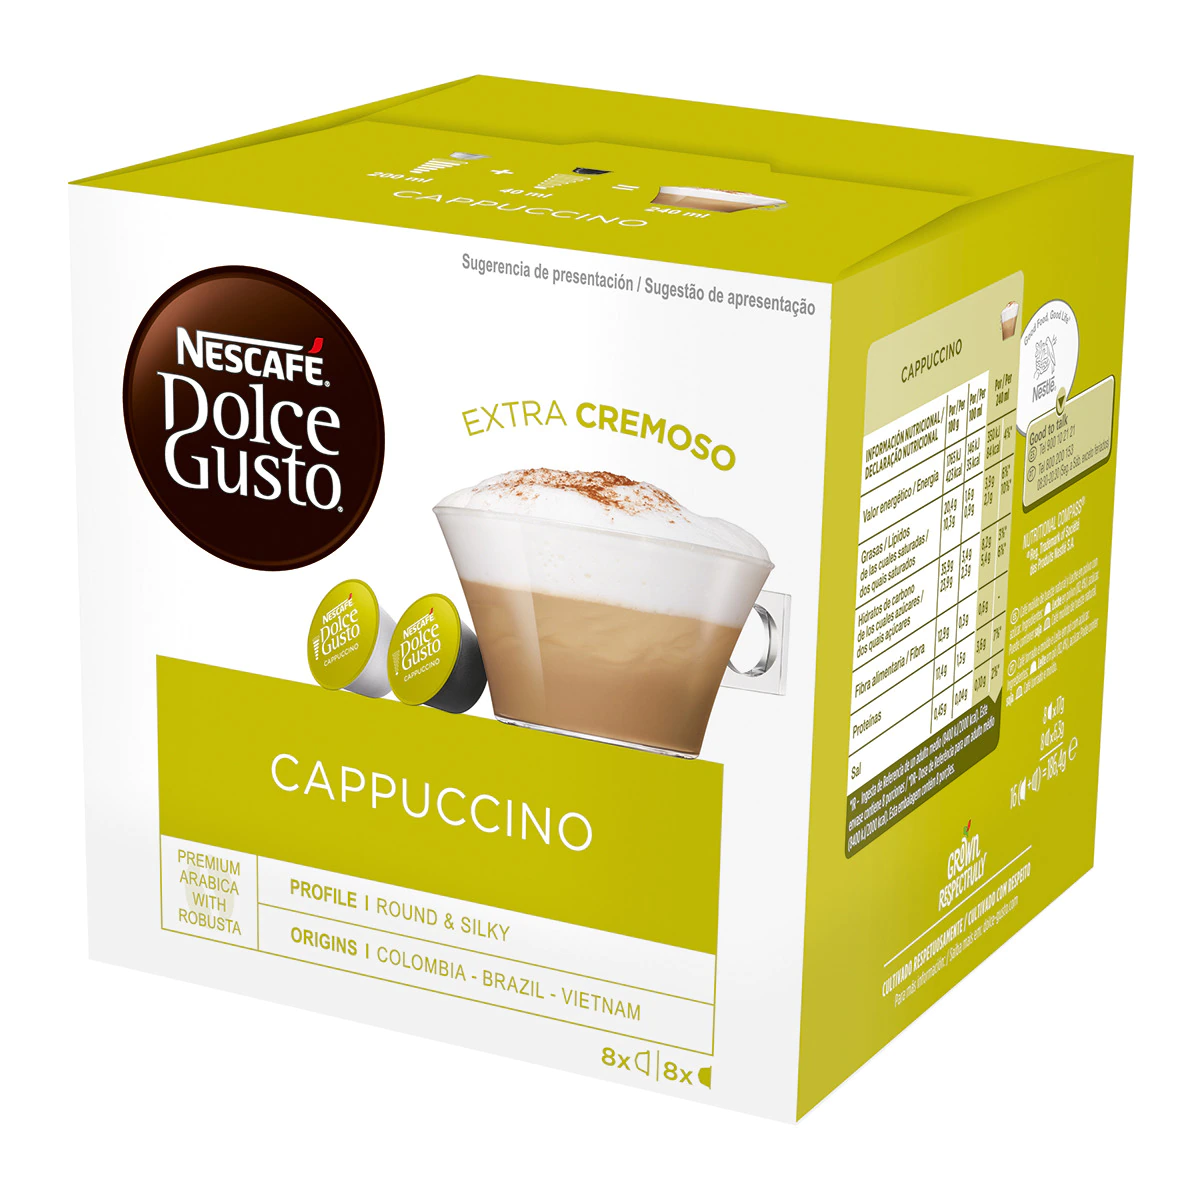 Estuche 8 cápsulas de café + 8 cápsulas de leche NESCAFE DOLCE GUSTO café Cappuccino Premium arábica y robusta de Colombia, Brasil y Vietnam intensida